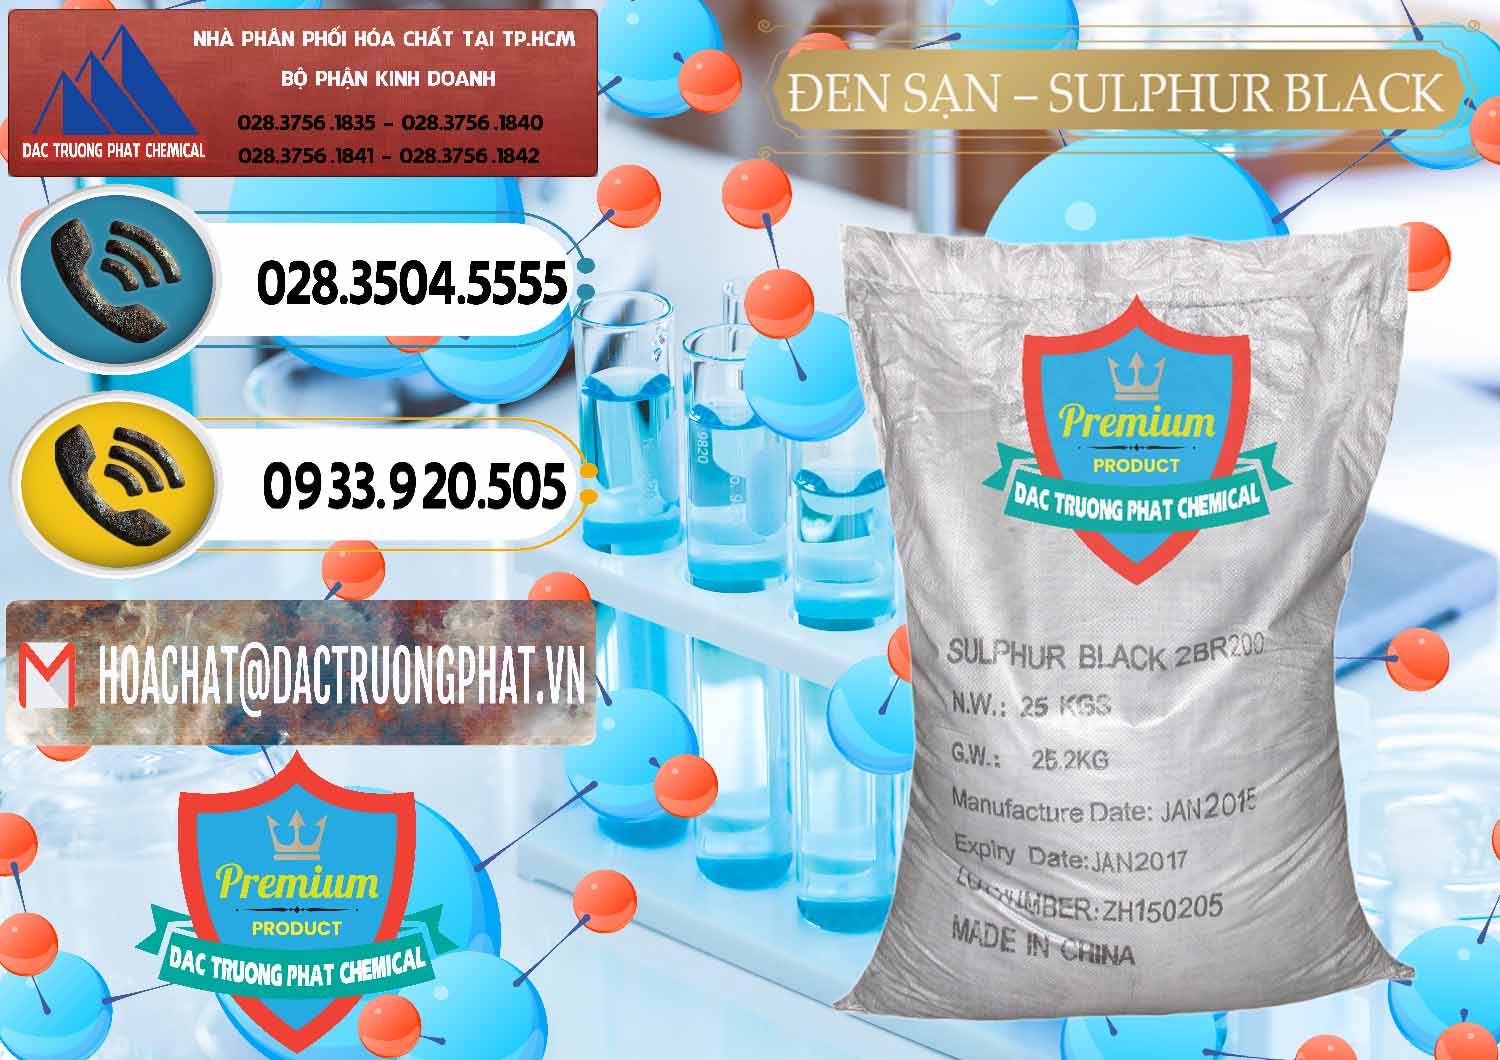 Cty cung cấp ( bán ) Đen Sạn – Sulphur Black Trung Quốc China - 0062 - Công ty chuyên nhập khẩu và phân phối hóa chất tại TP.HCM - hoachatdetnhuom.vn